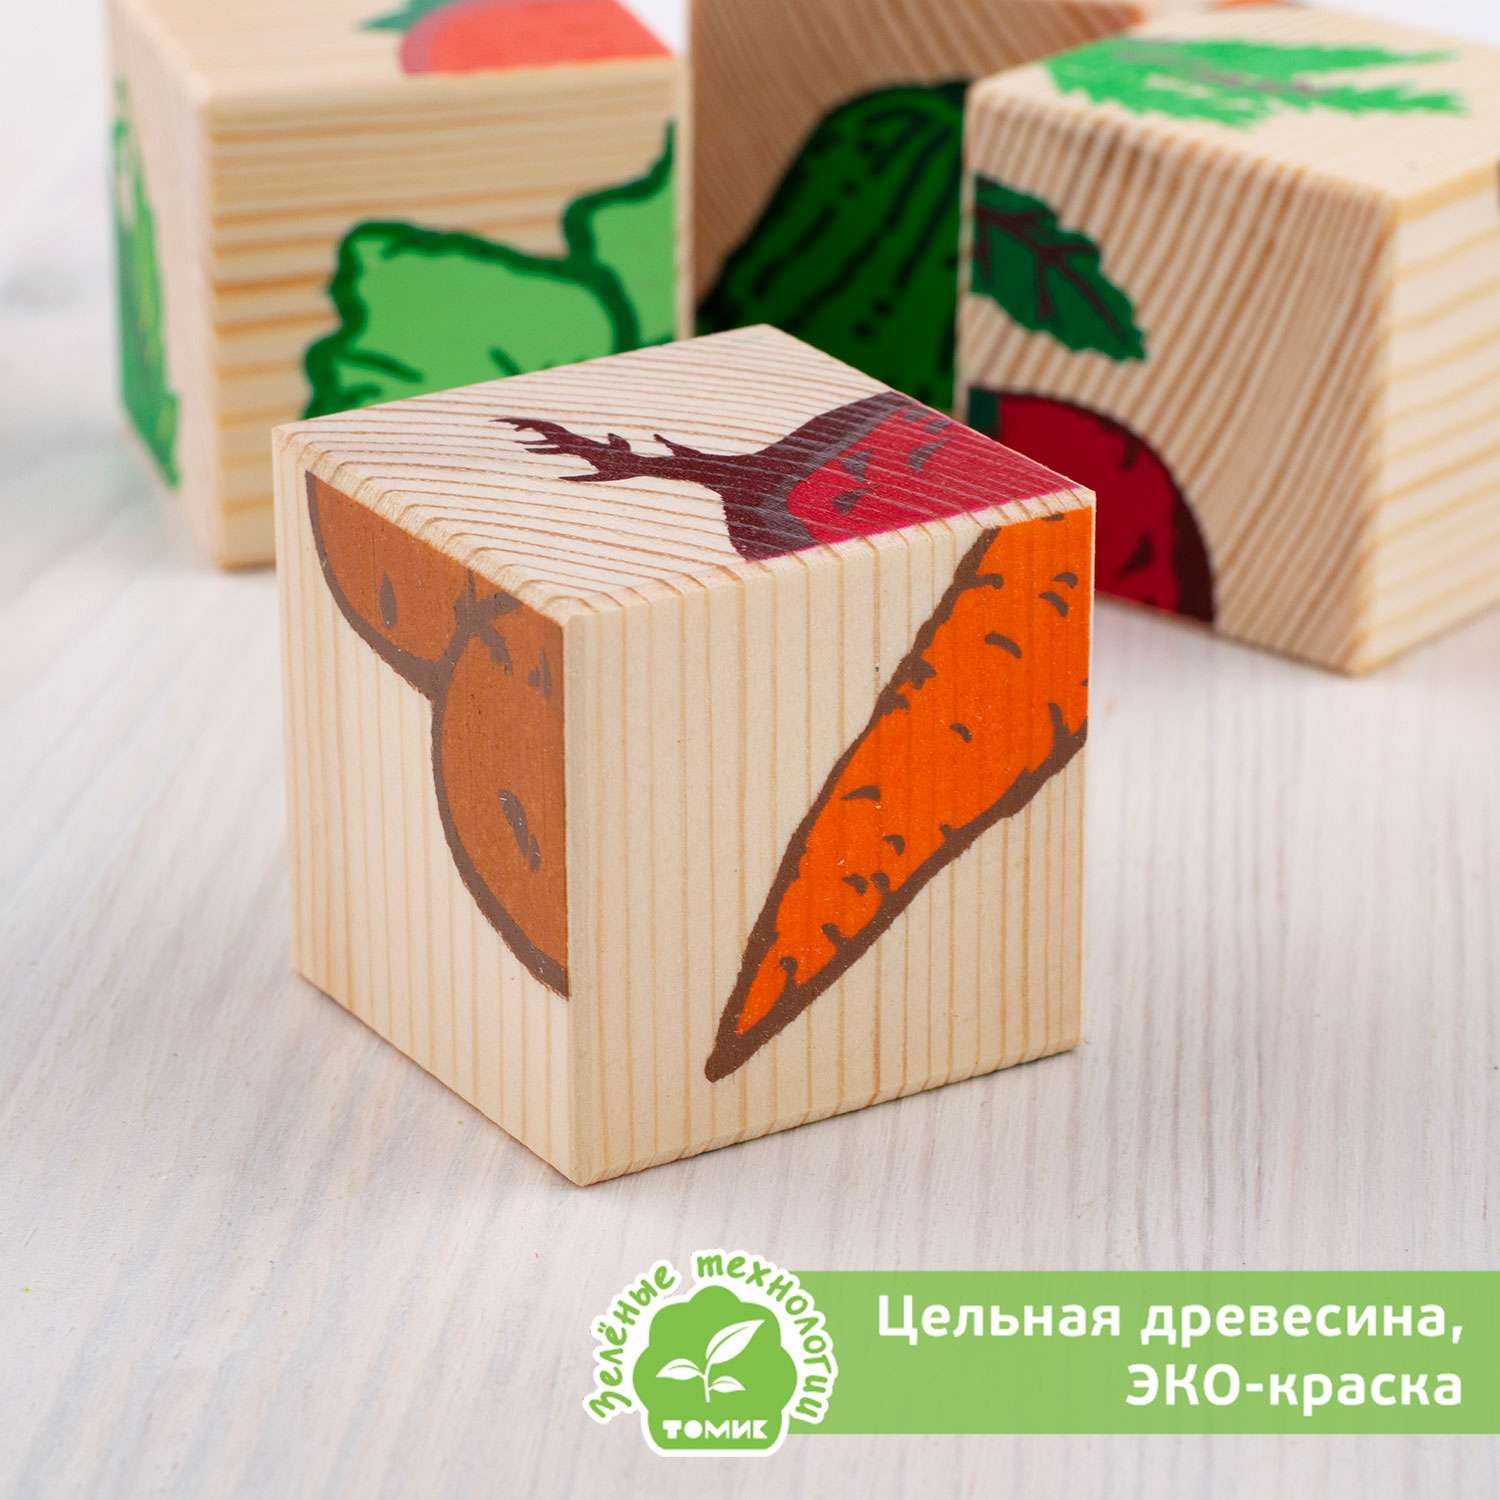 Кубики для детей Томик развивающие Овощи 4 штуки 3333-6 - фото 4